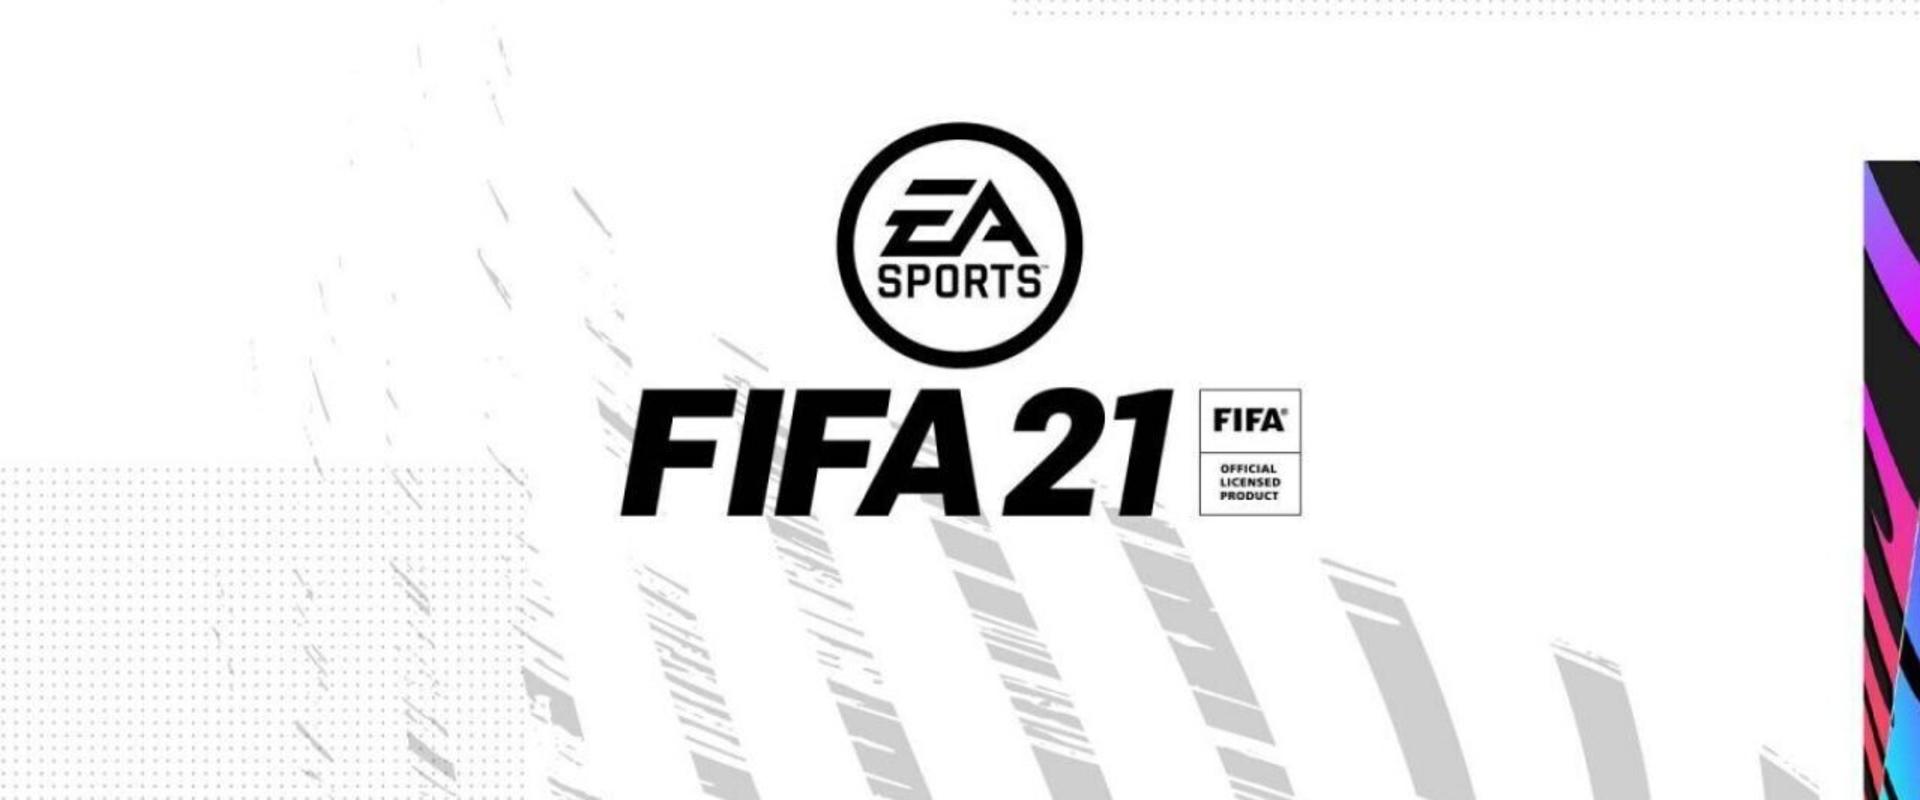 Pont került a FIFA 21 script ügy végére: az EA bíróság előtt bizonyított